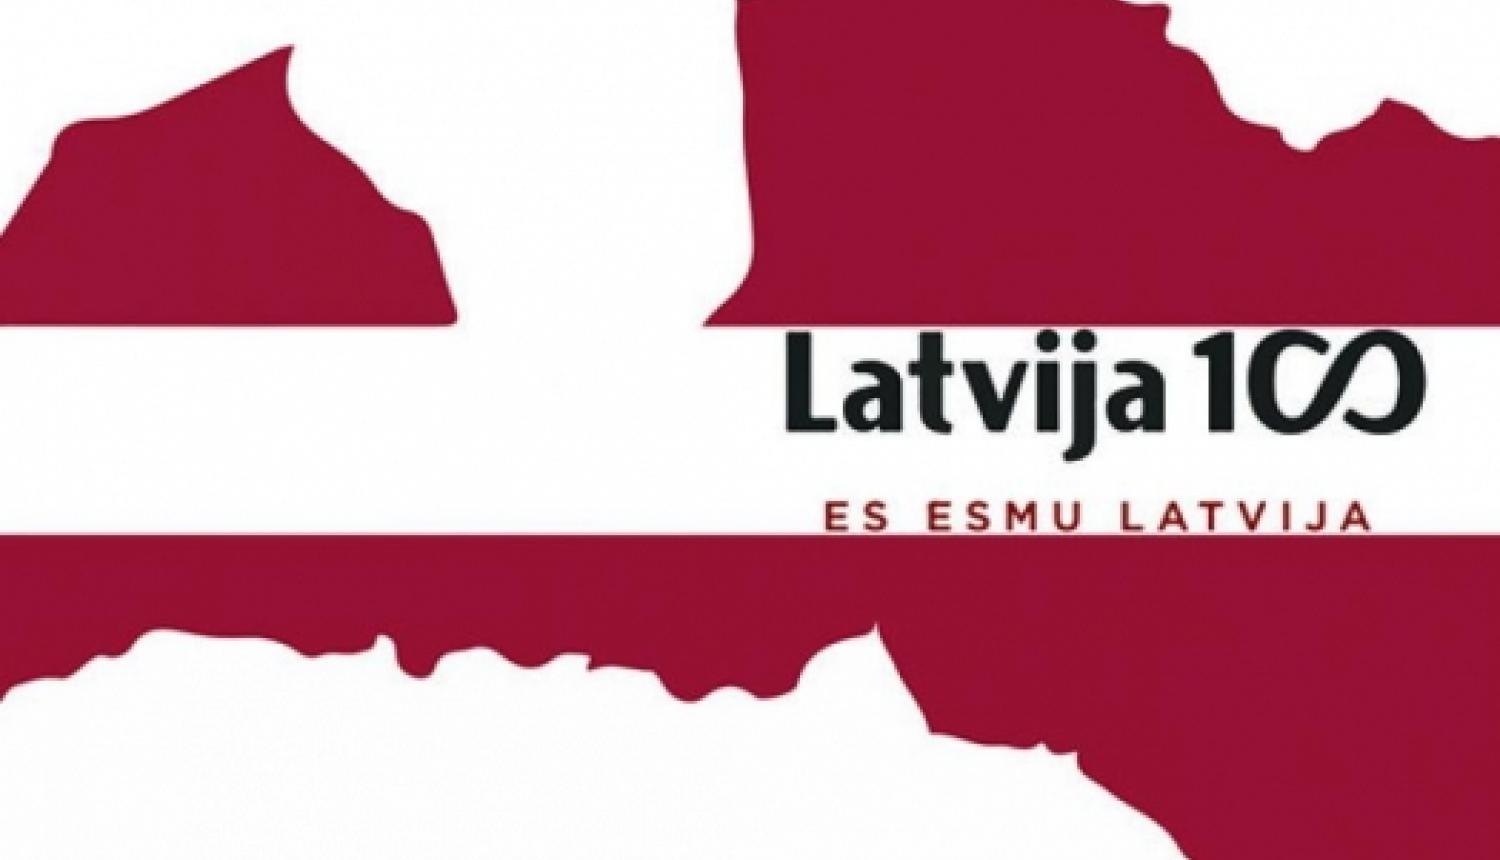 Starp Latvijas skolēnu labajiem darbiem arī asins ziedošana